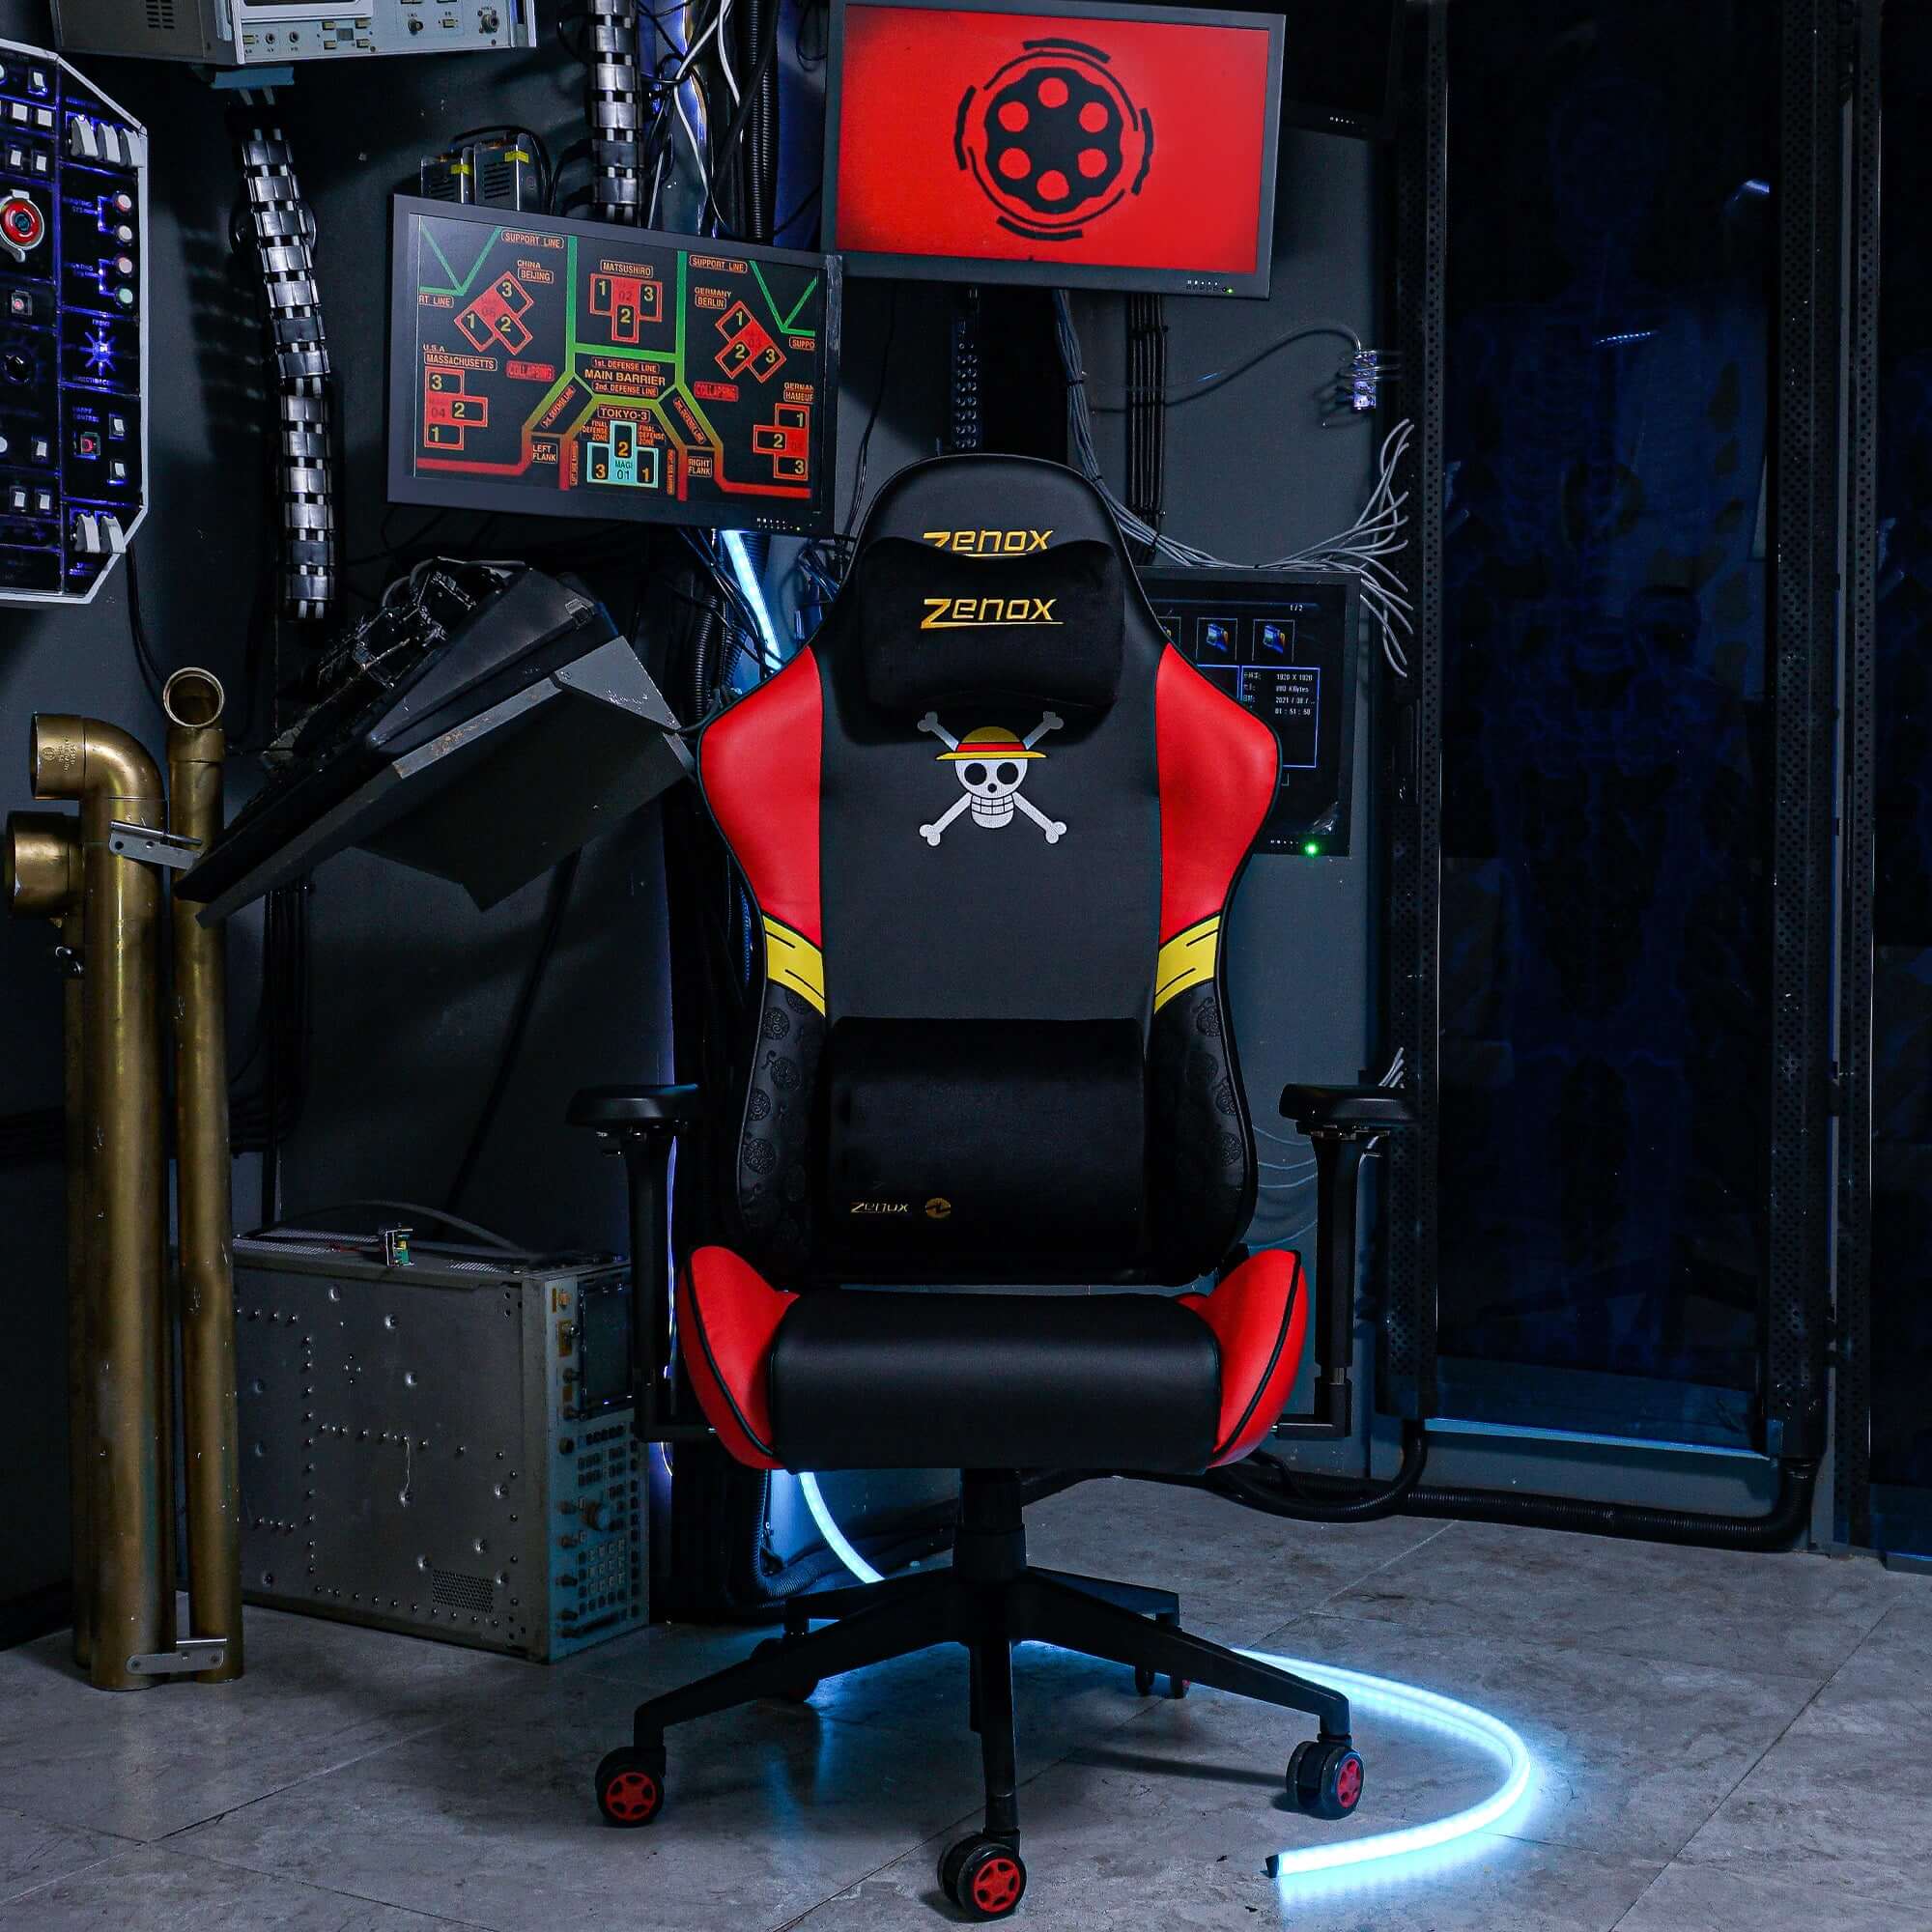 Zenox X 海賊王(路飛)限量特別版土星MK2電競椅｜Zenox Saturn MK2 